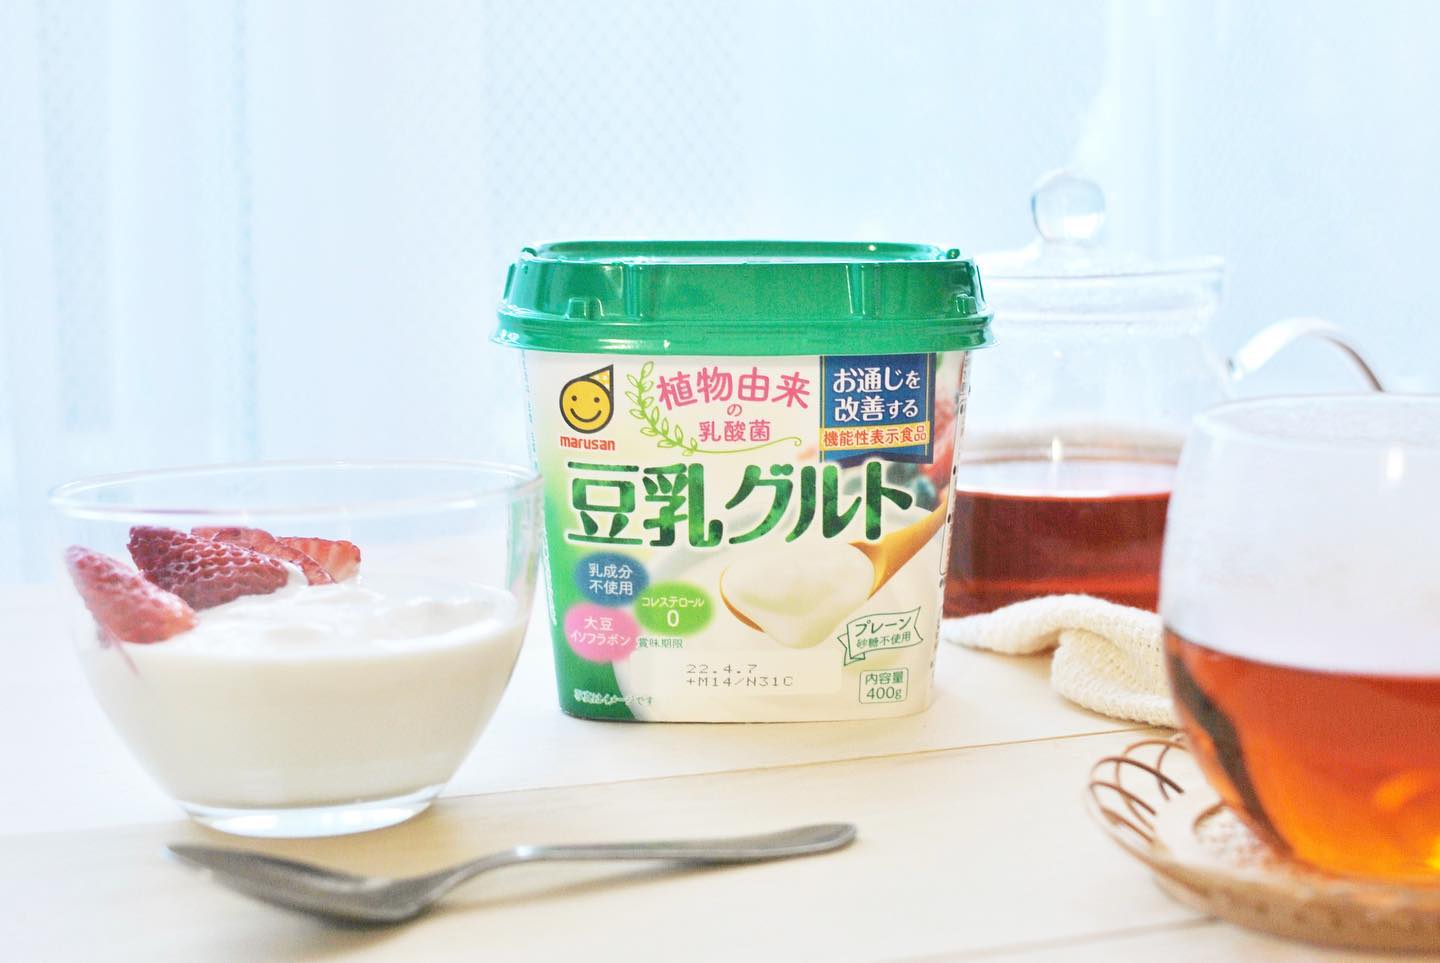 口コミ投稿：20220416マルサン @marusanai_official さんから発売されている豆乳グルトを食べてみ…